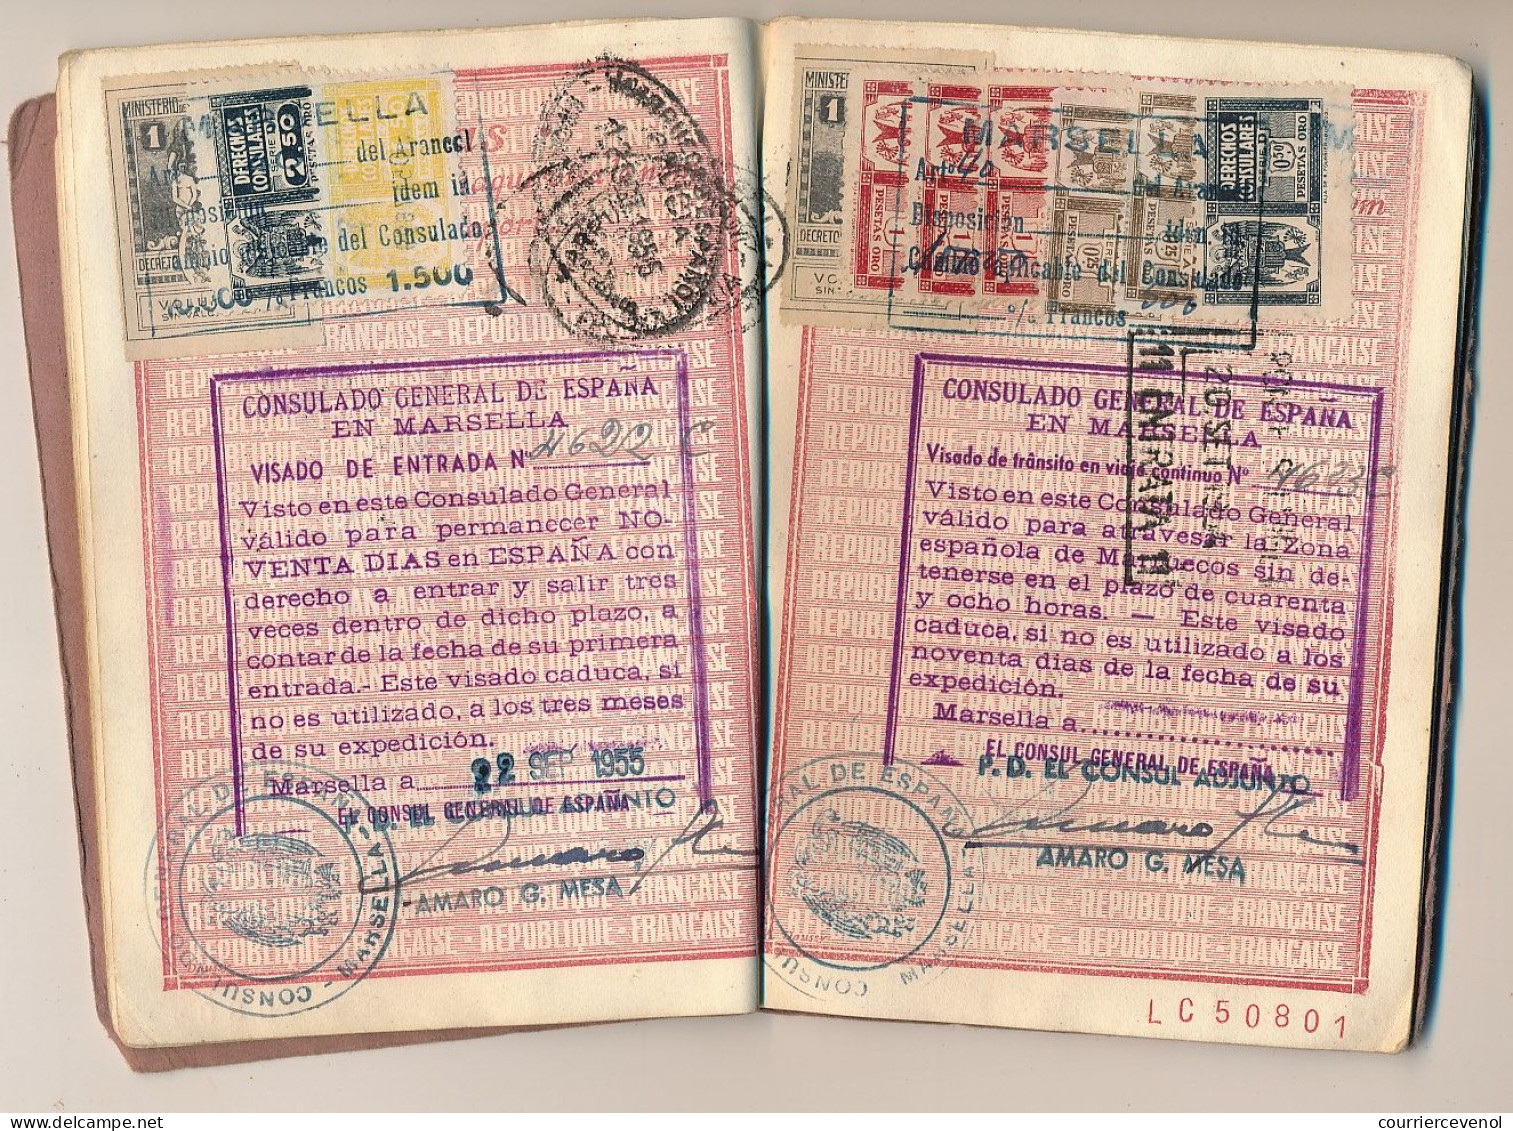 FRANCE - Passeport délivré à CARPENTRAS, années 50, mère enfant, Fiscaux 300F, 2000F, 100F + Nombreux espagnols